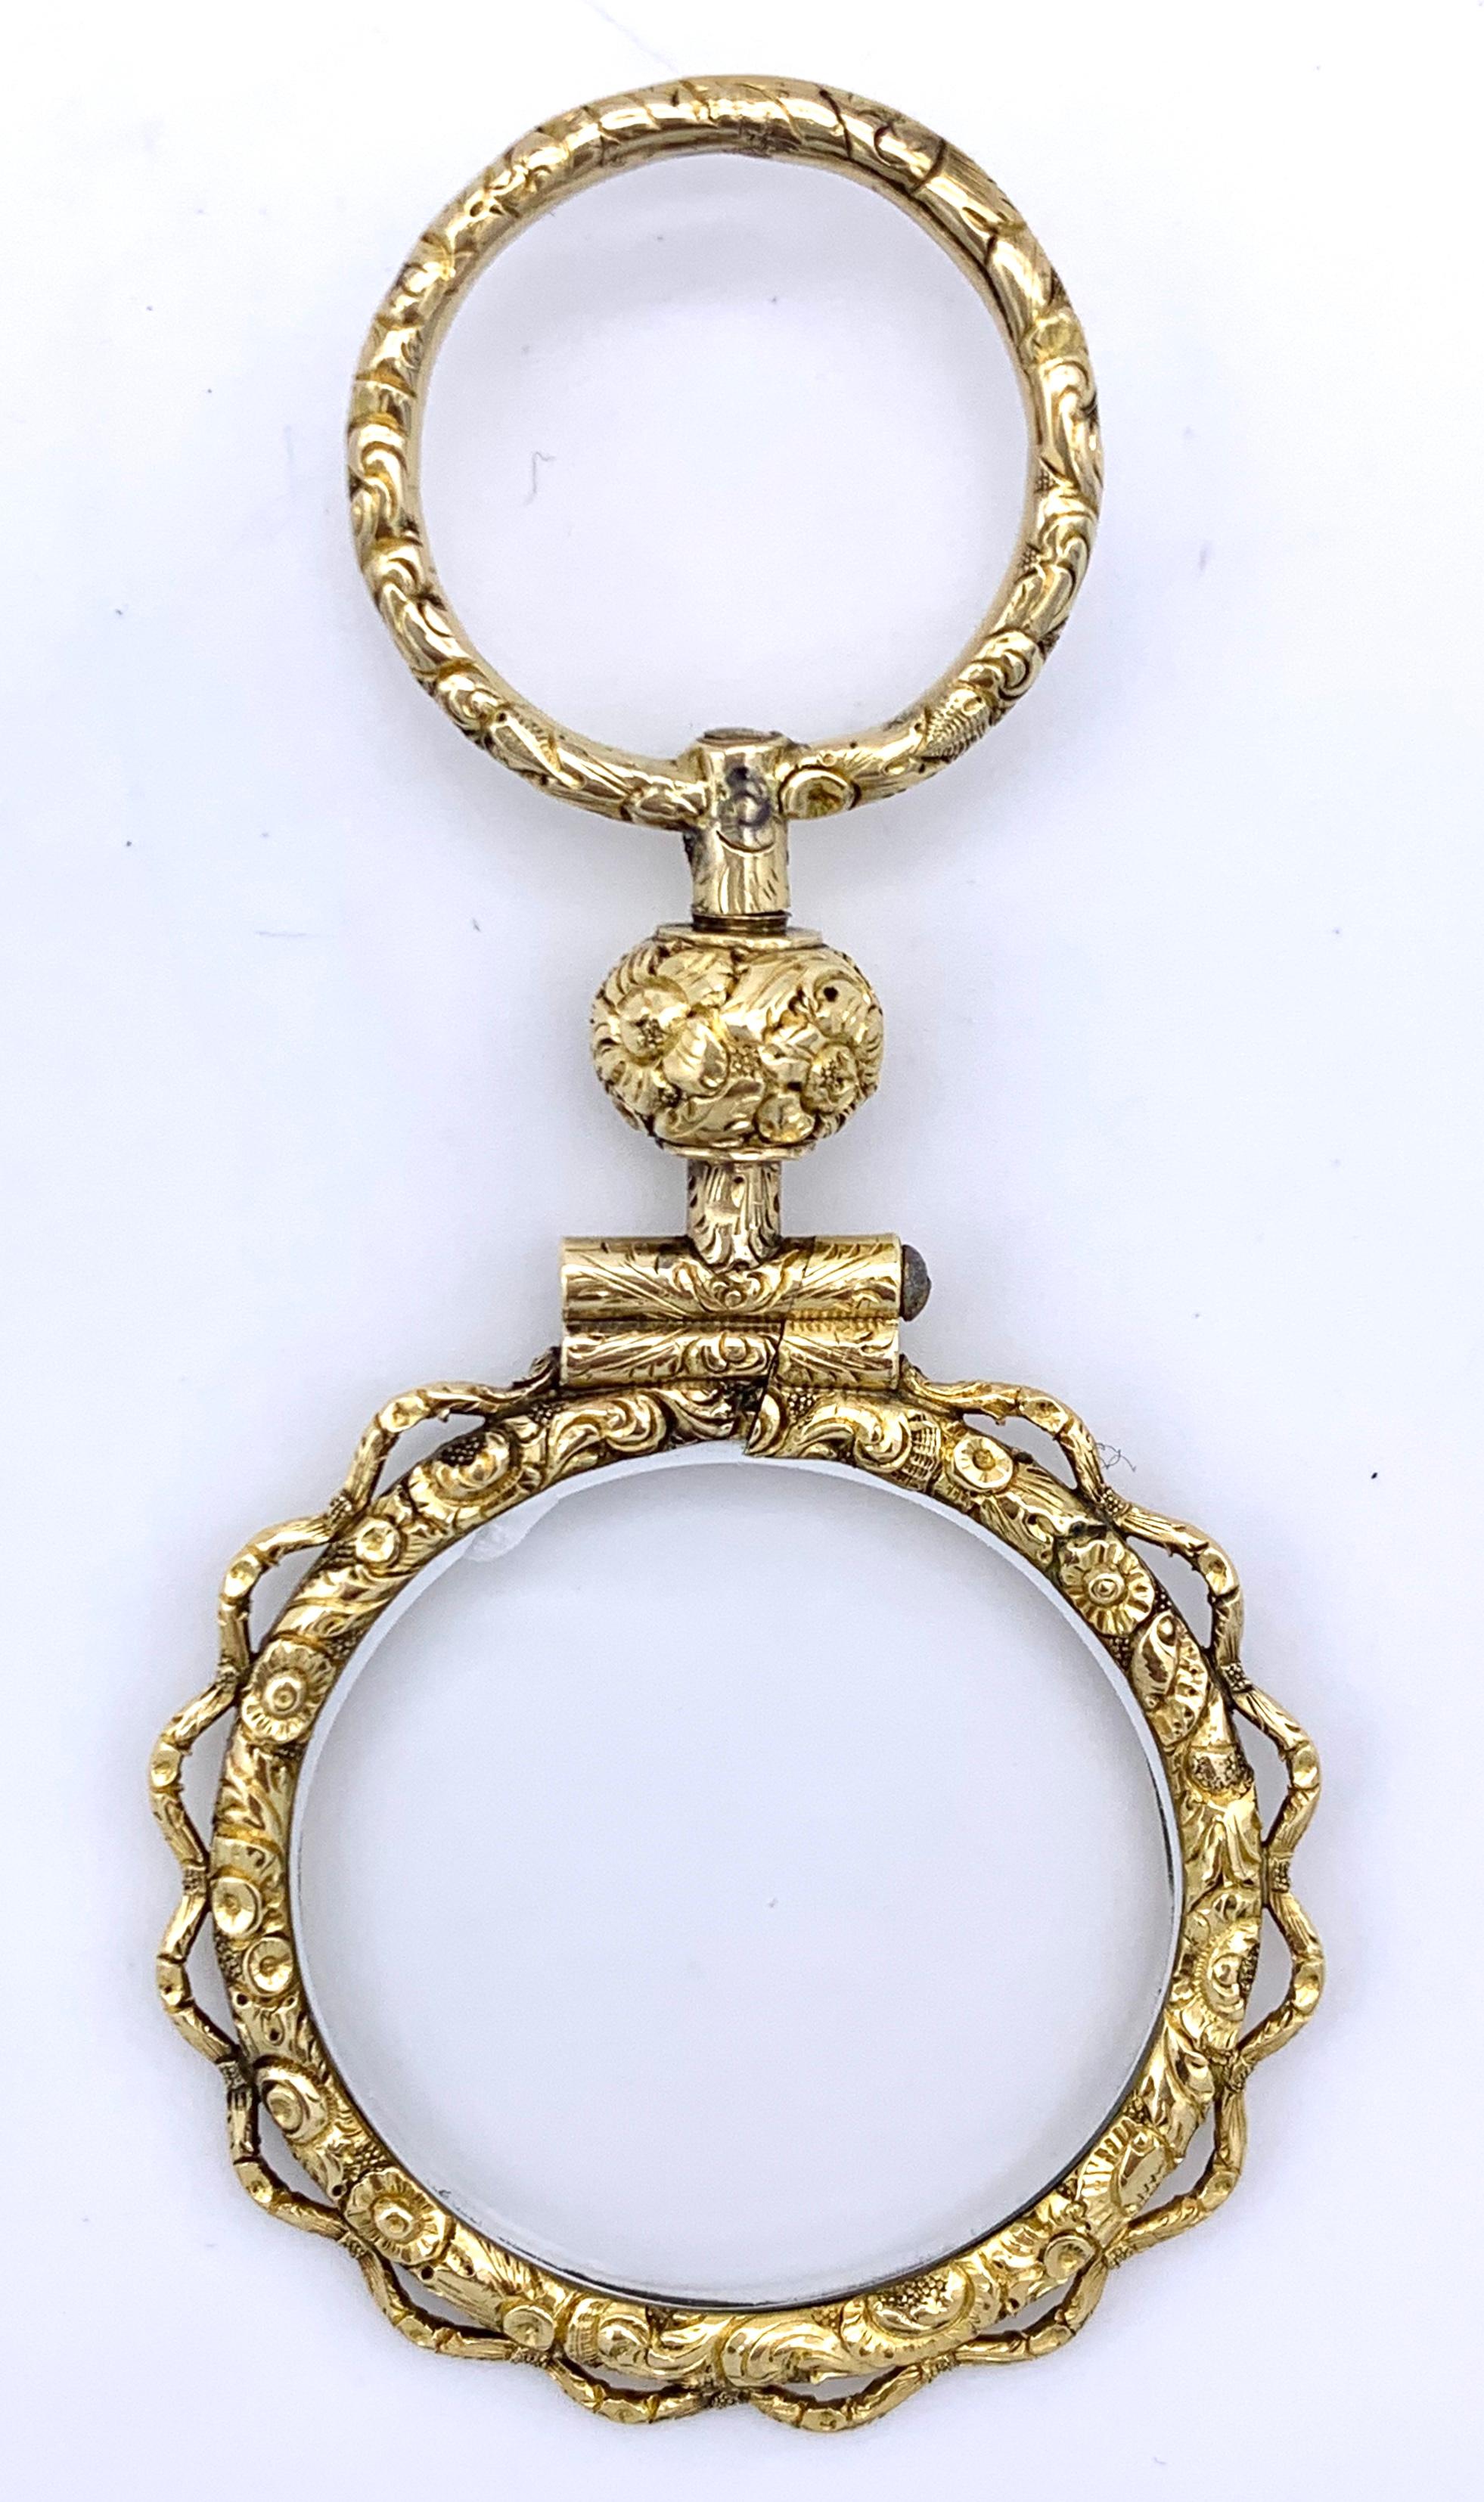 Dieses schöne Quizglas war das dringend benötigte und geschätzte Accessoire einer eleganten georgischen Persönlichkeit.
Das Quizglas wurde um 1825 in Handarbeit aus 15-karätigem Gold hergestellt. Das Gold ist fein ziseliert und mit Blumenornamenten